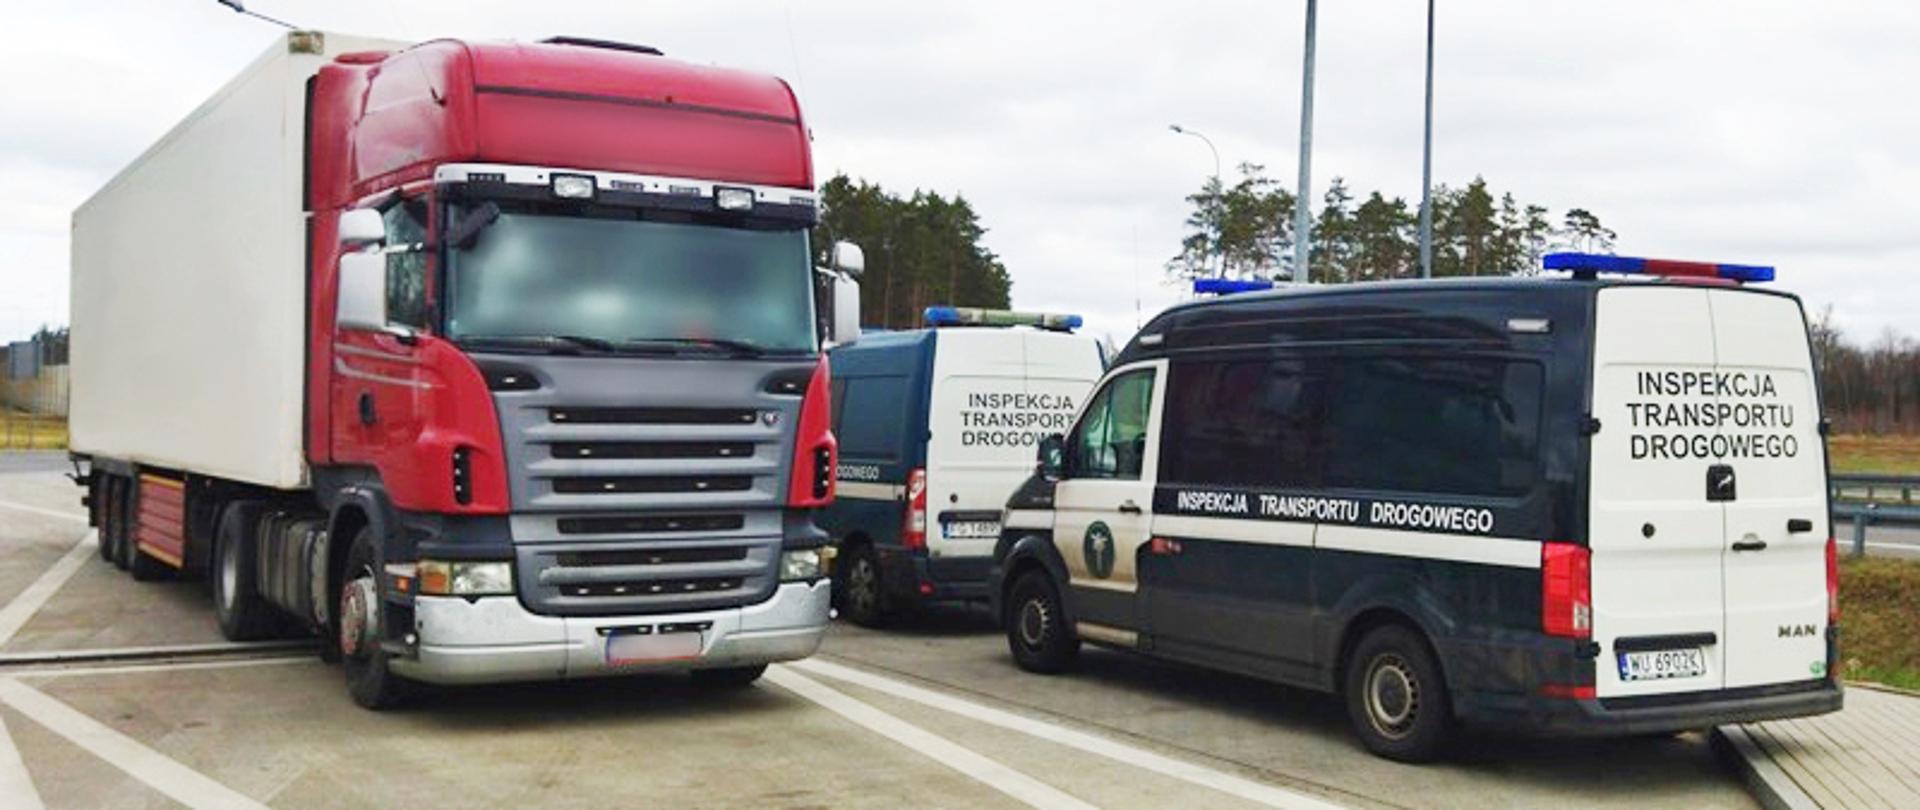 Samochód ciężarowy, jaki na ekspresowej „trójce” zatrzymali inspektorzy lubuskiej Inspekcji Transportu Drogowego. Przydrożny parking. Po lewej ciężarówka, po prawej dwa furgony ITD.